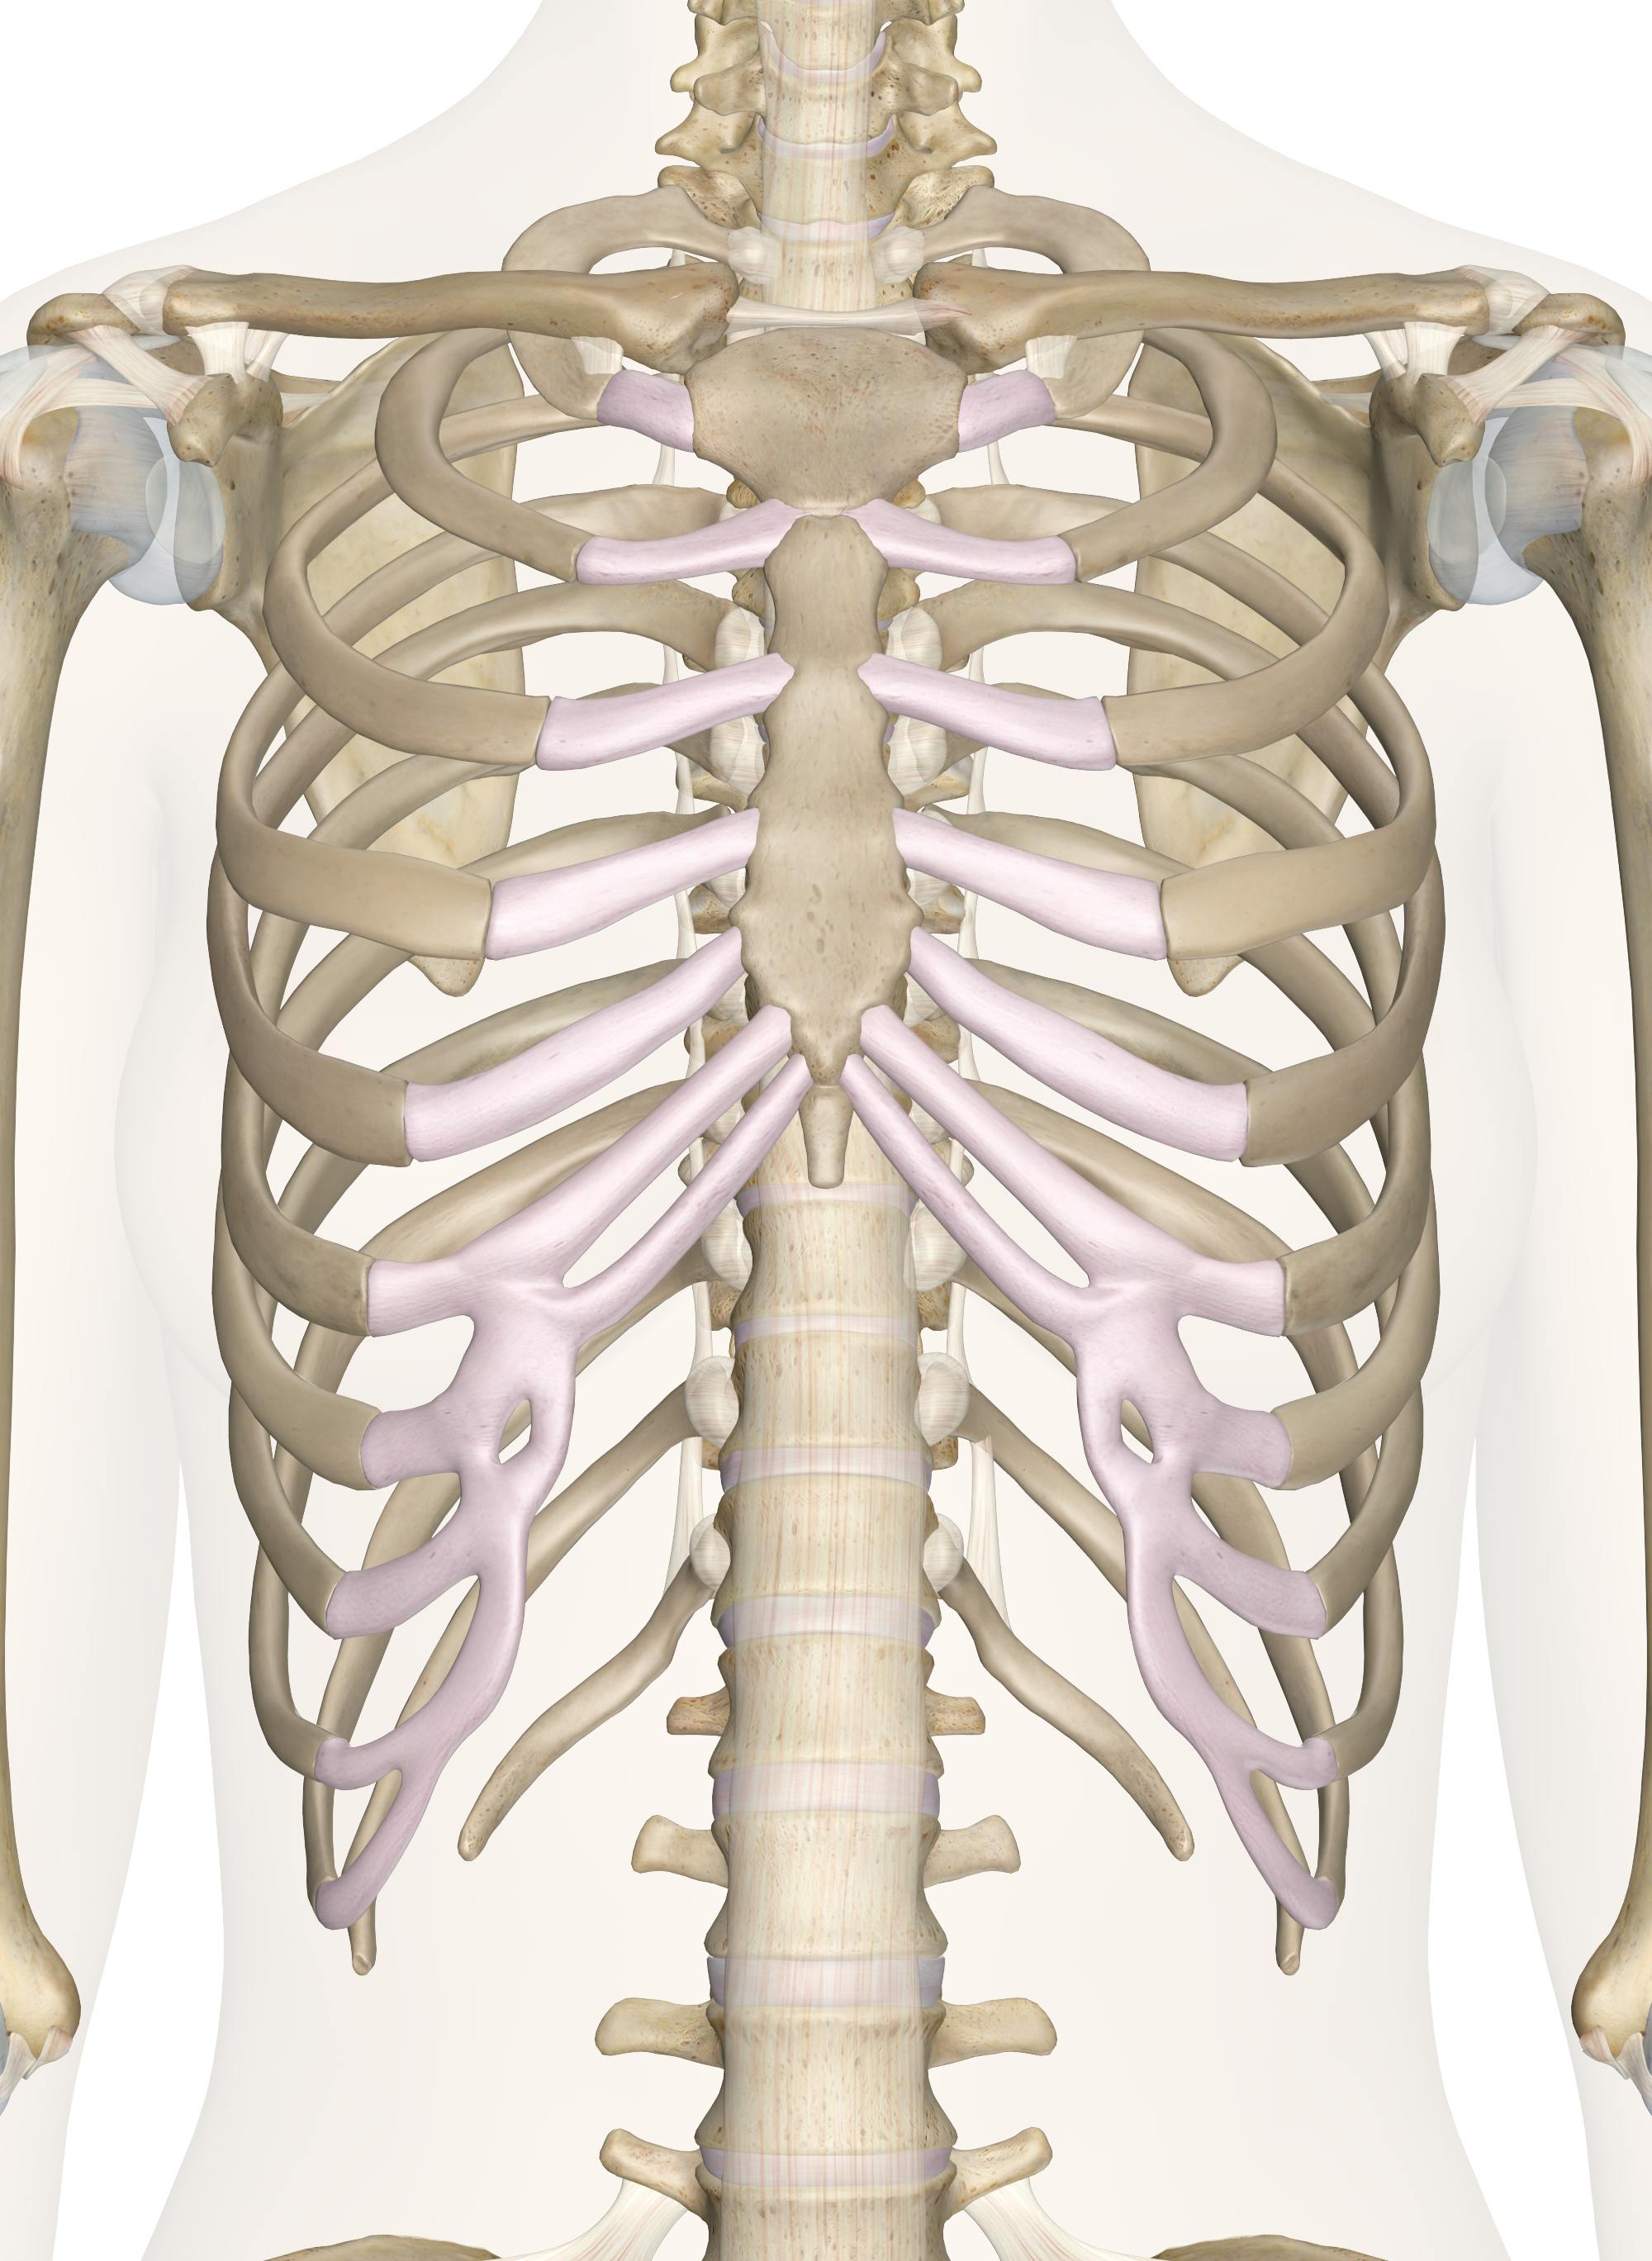 is the rib a flat bone